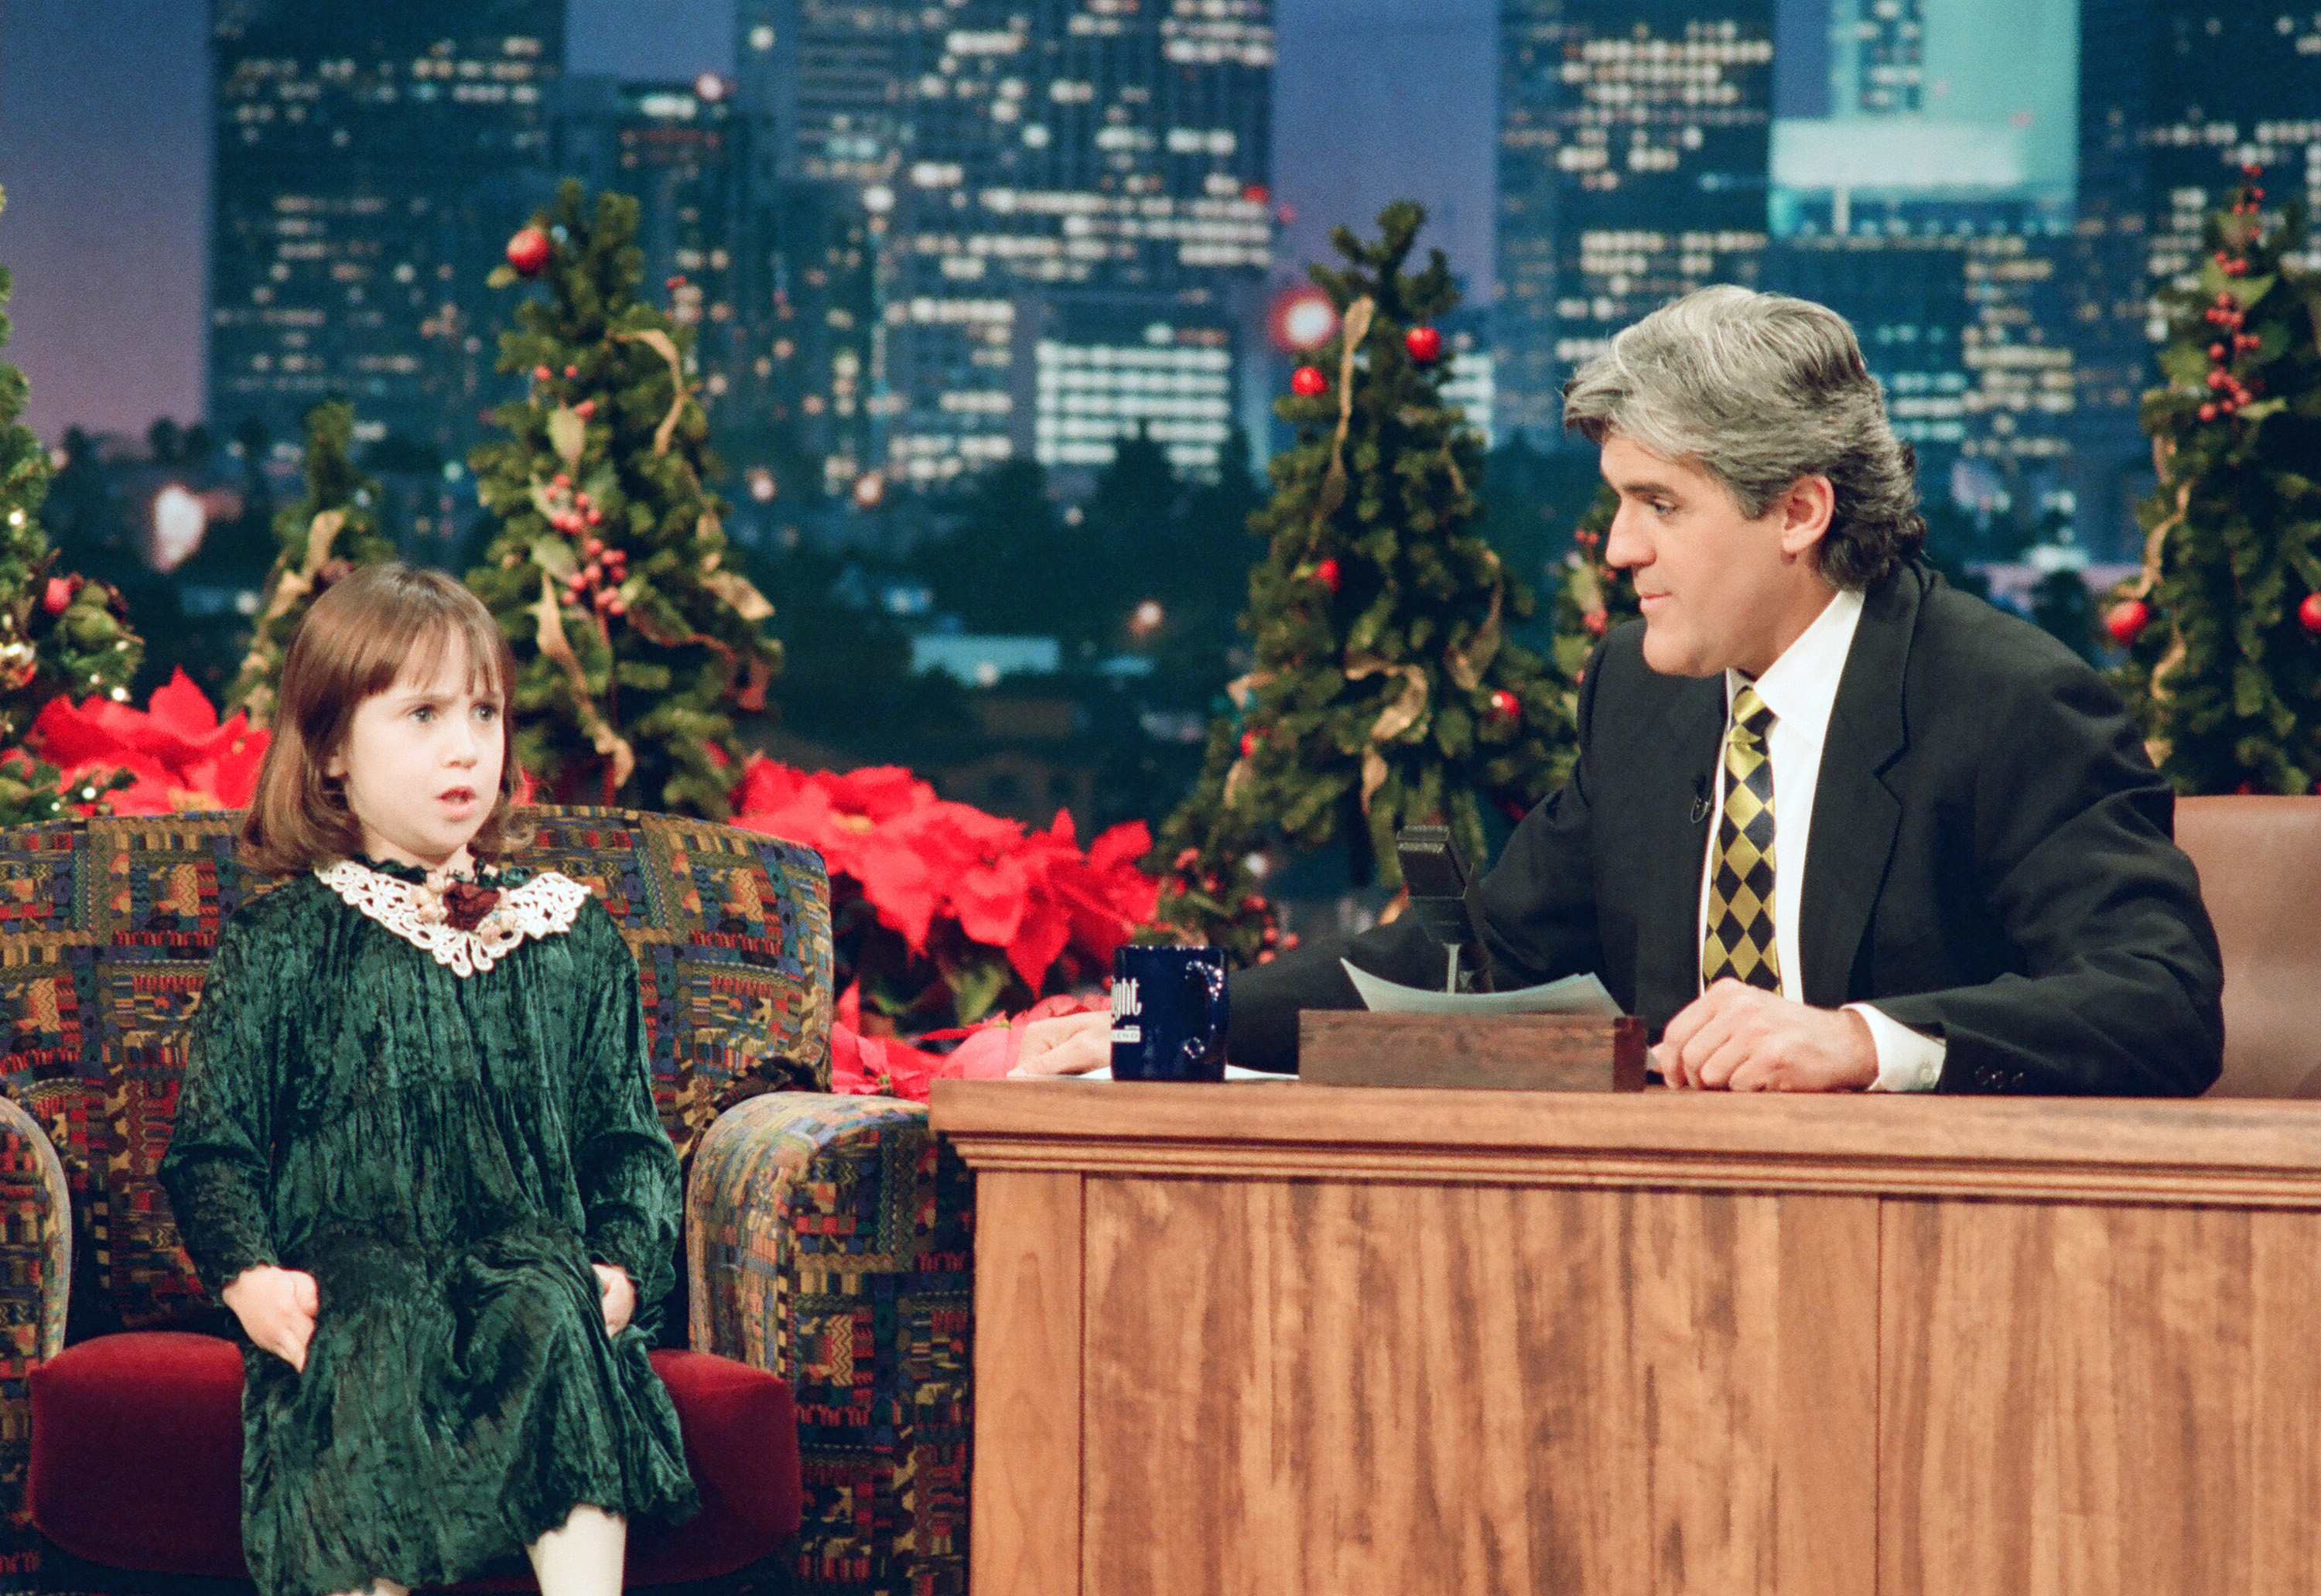 Mara Wilson lors d'une interview dans l'émission "The Tonight Show with Jay Leno" le 13 décembre 1994 | Source : Getty Images